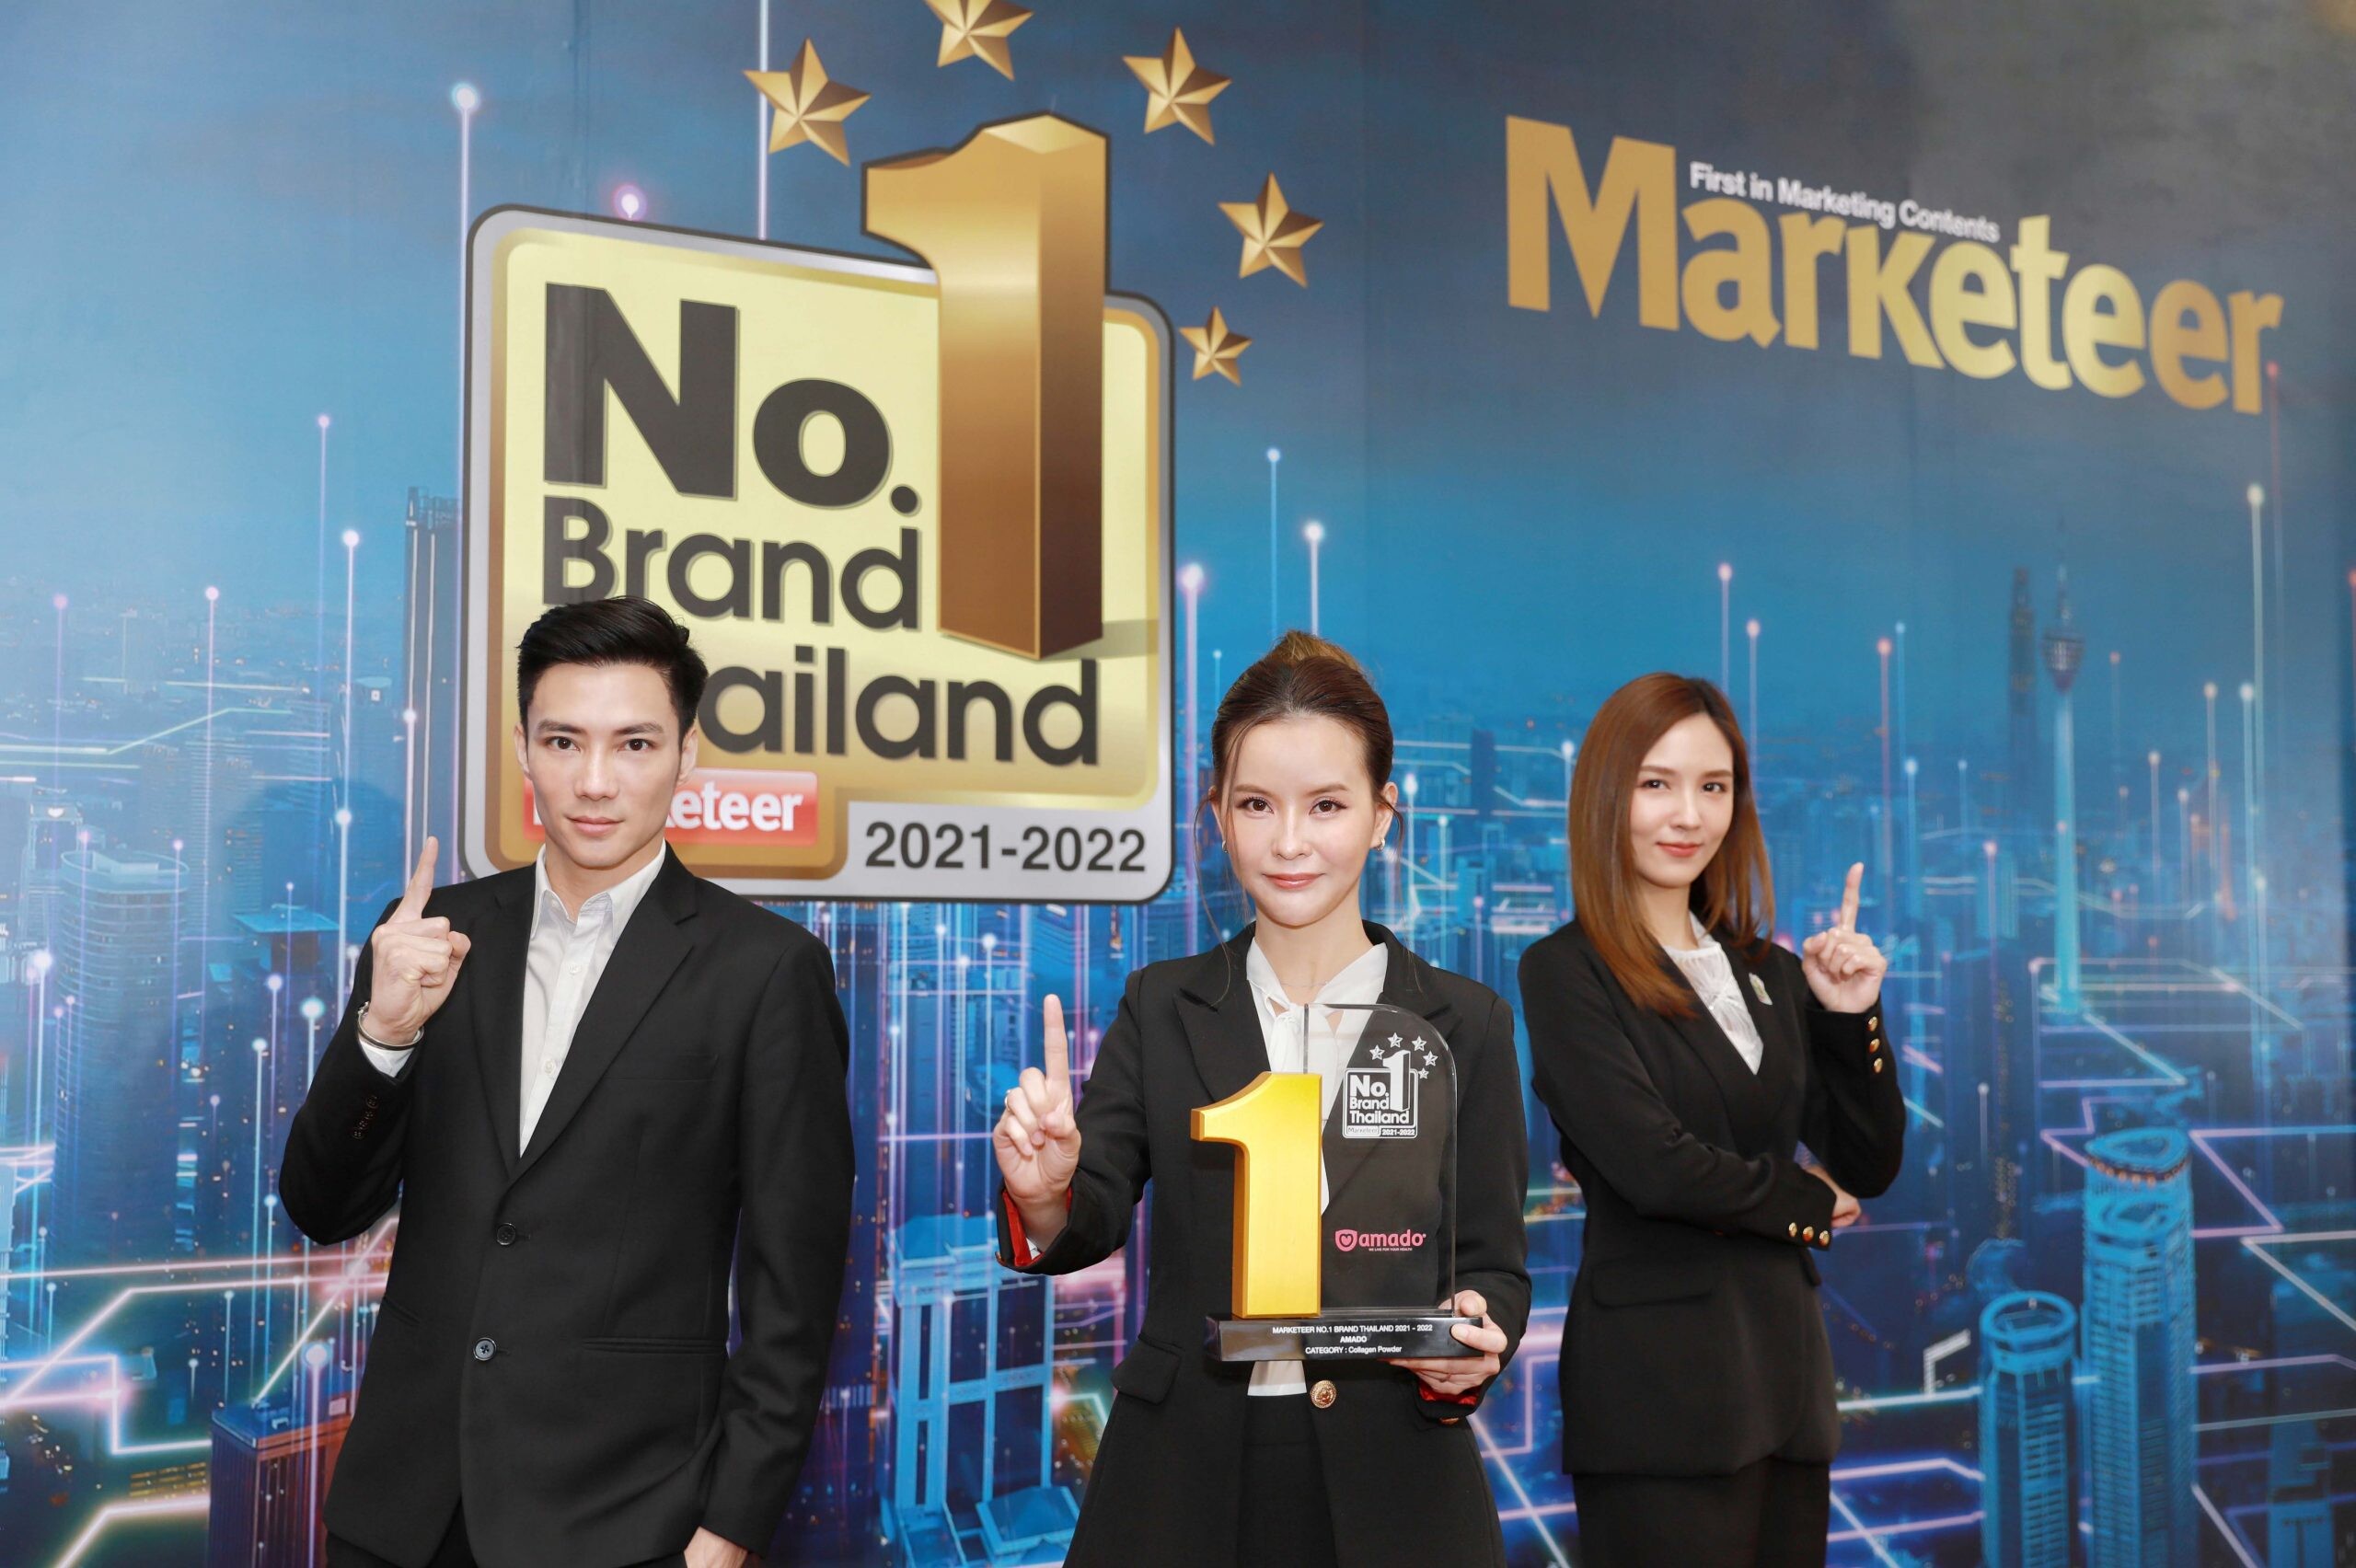 คอลลิจิ คอลลาเจน จาก "อมาโด้" ตอกย้ำความเป็น 1 คว้ารางวัล "Marketeer No.1 Brand Thailand 2021-2022" ต่อเนื่องเป็นปีที่ 3